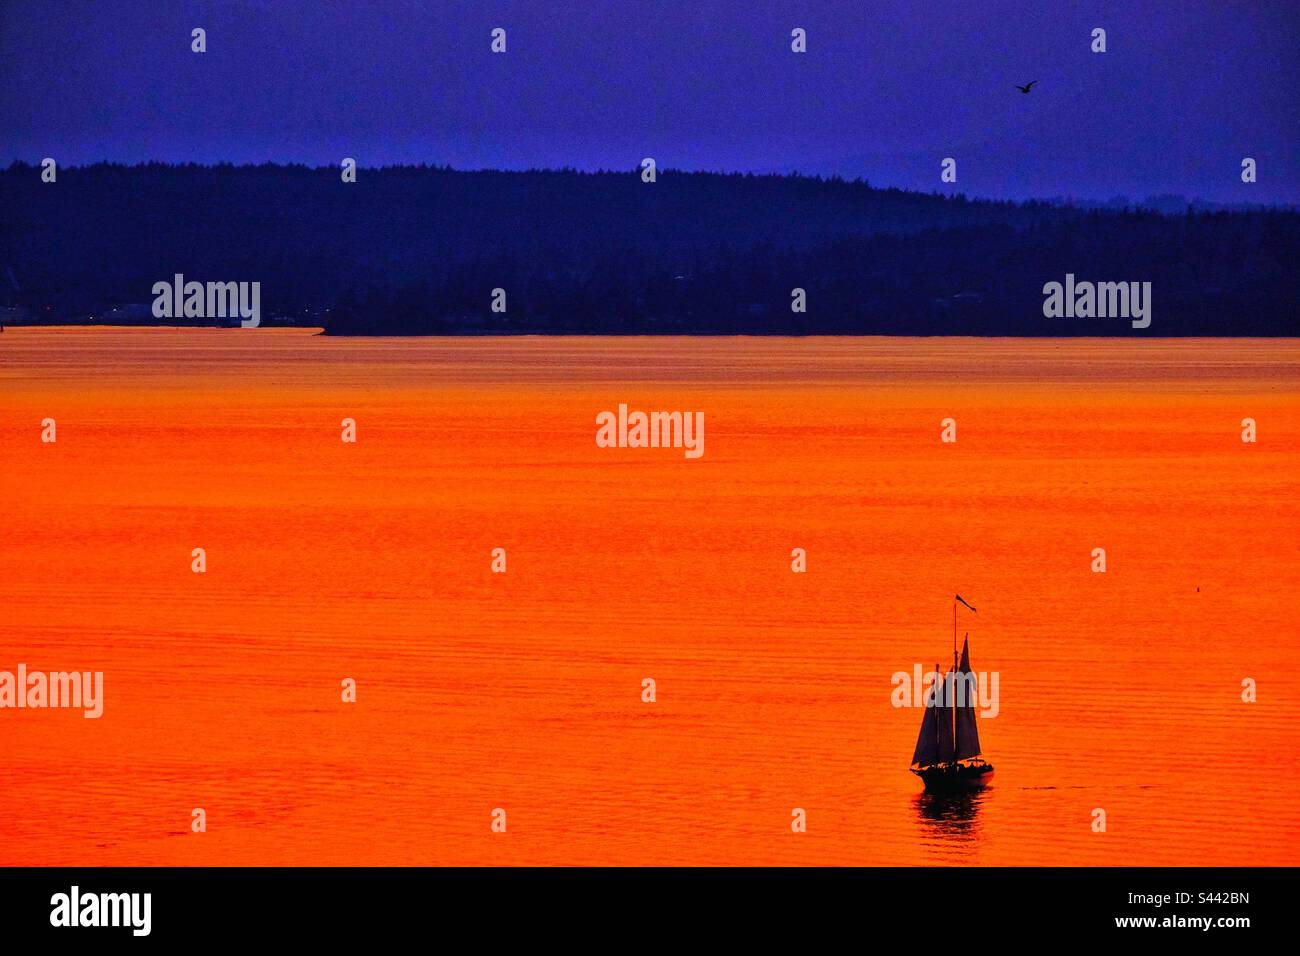 Après le coucher du soleil sur la mer Salish depuis Seattle, l'aspect ouest colore l'orange de l'eau avec un voilier qui navigue jusqu'à la fin du printemps. Banque D'Images